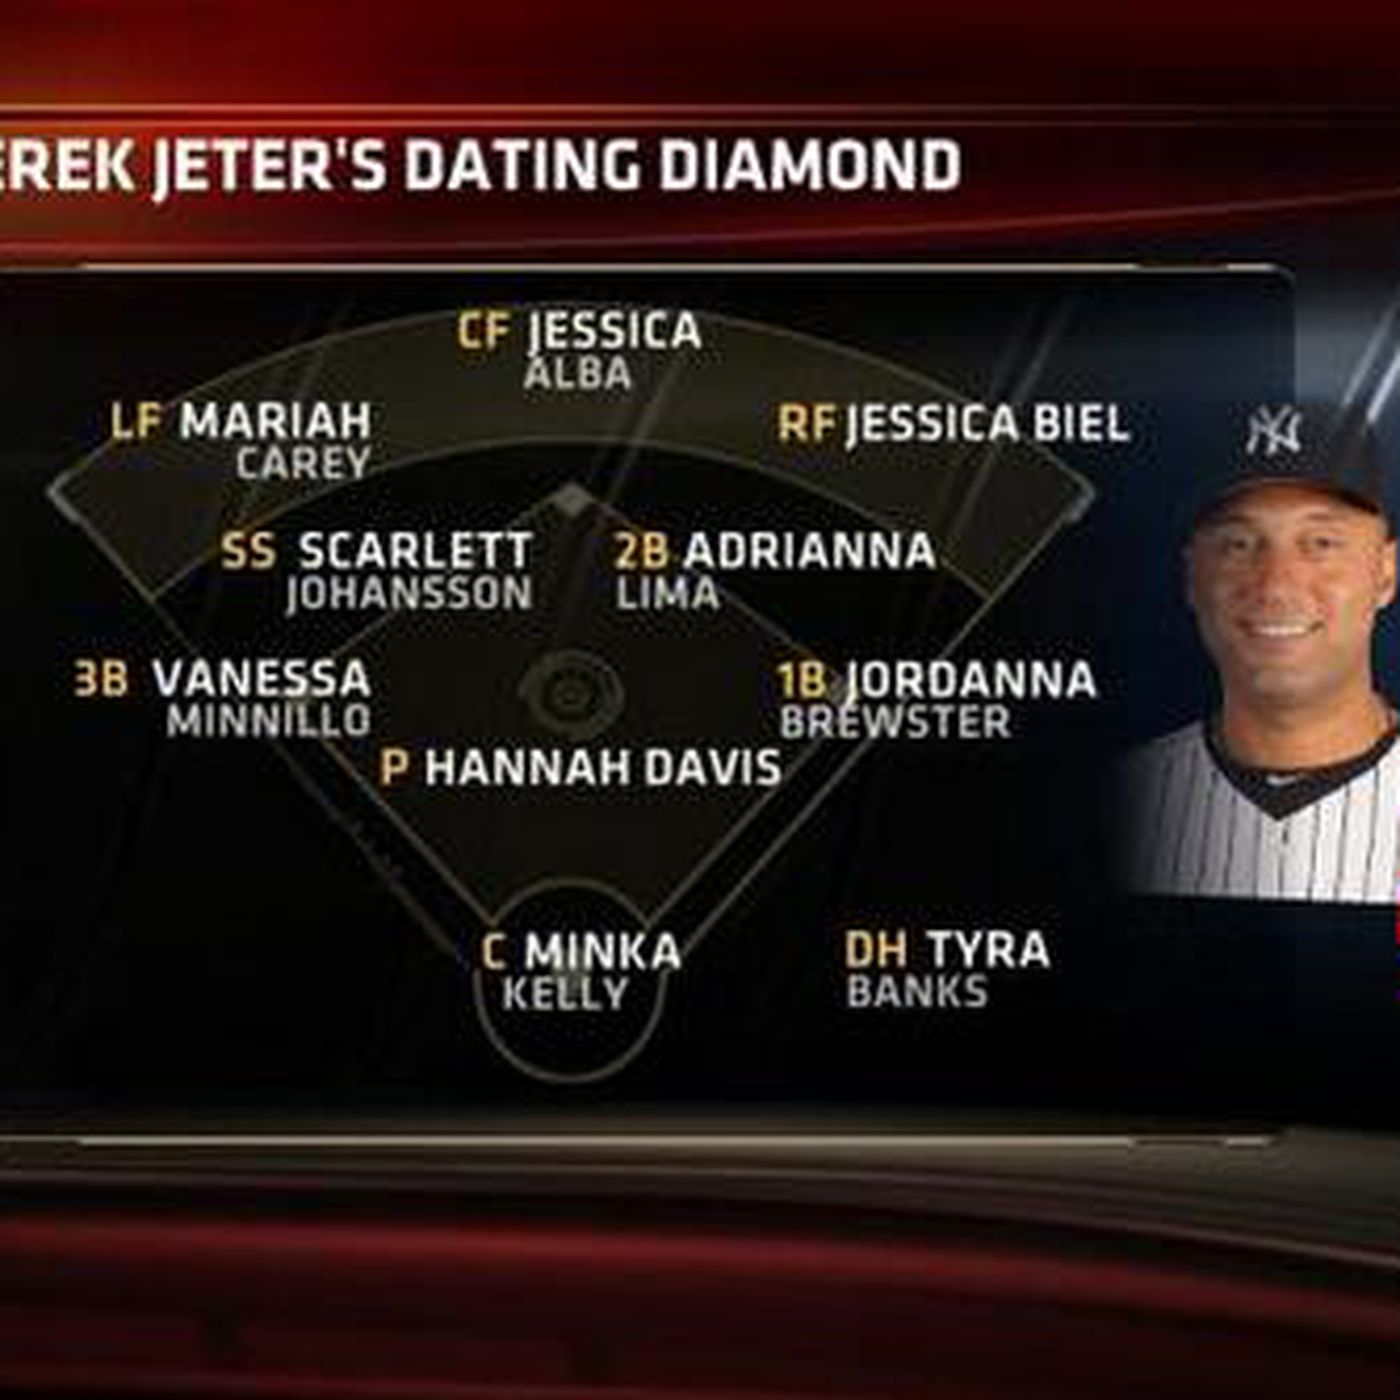 Derek Jeter dating Baseball team